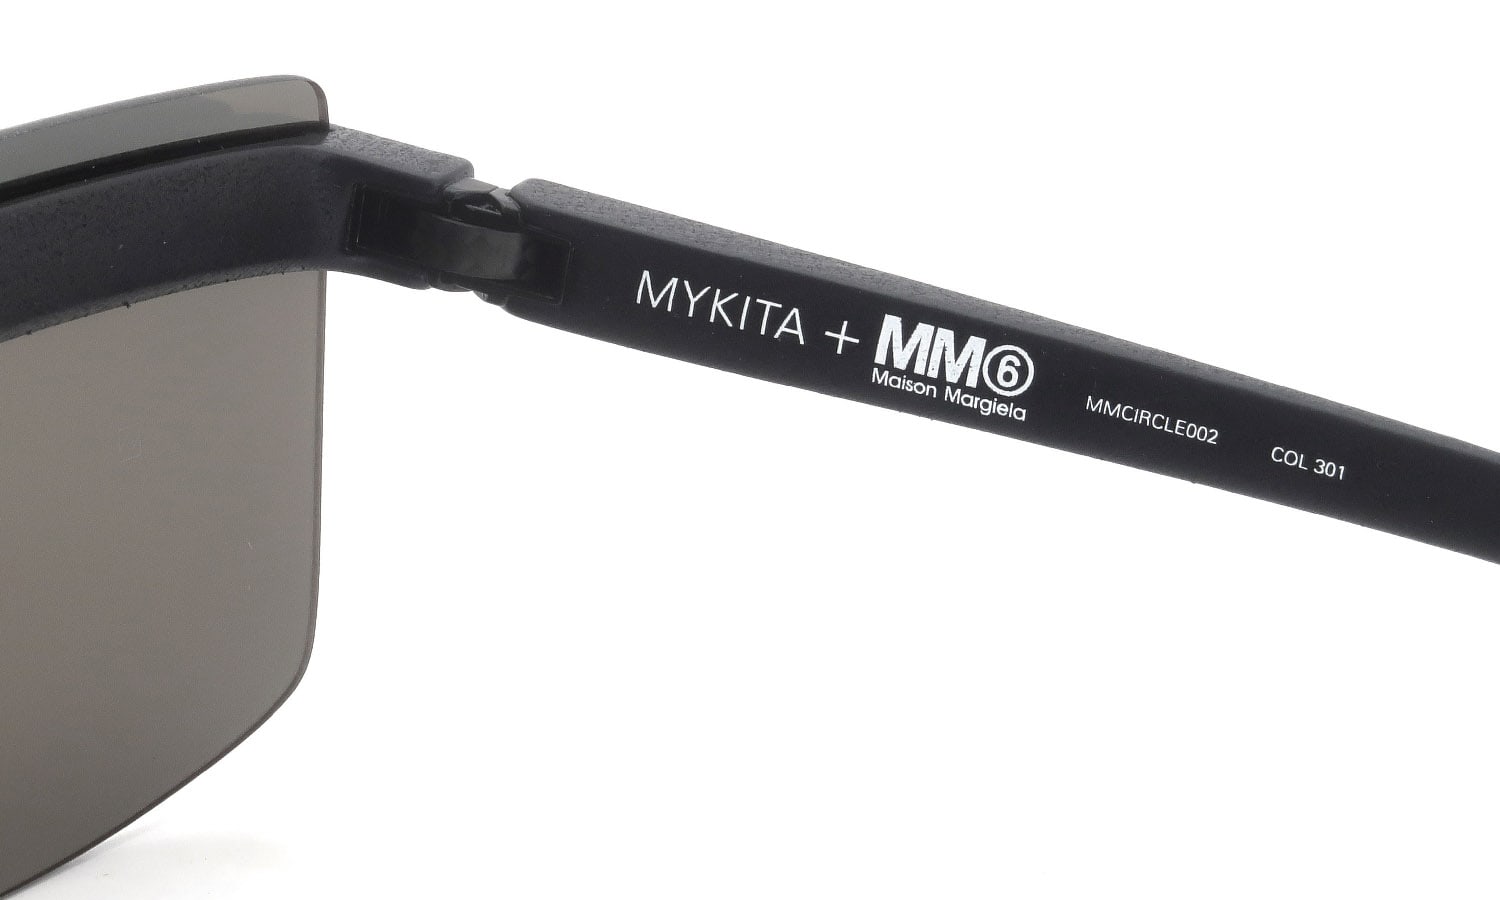 MYKITA+MM6 MMCIRCLE002 COL.301